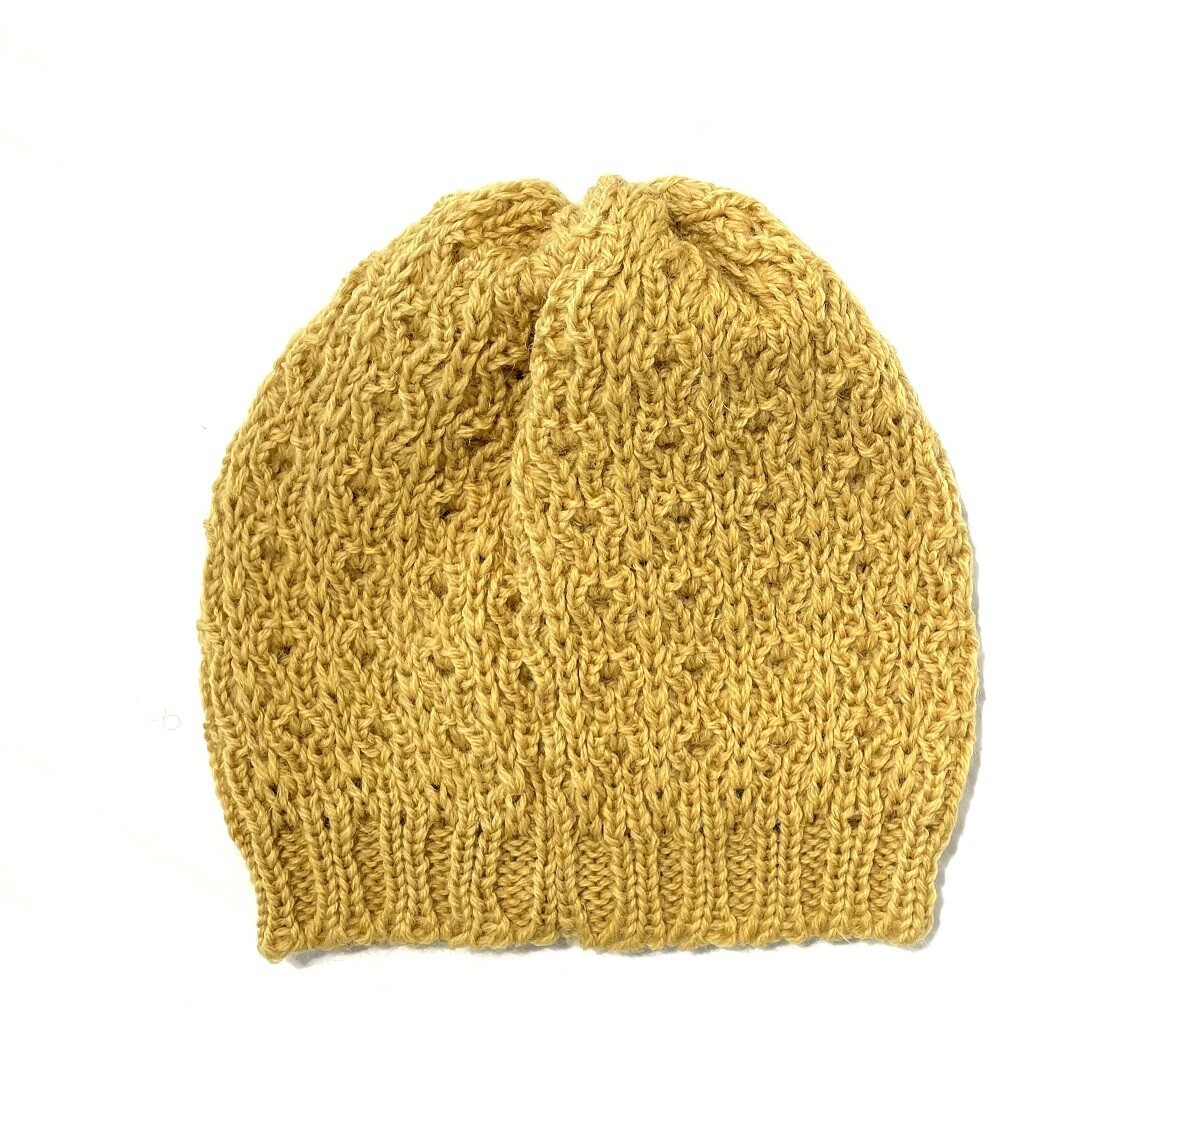 Sunflower Flowerhead Hat- Northern Watters Knitwear